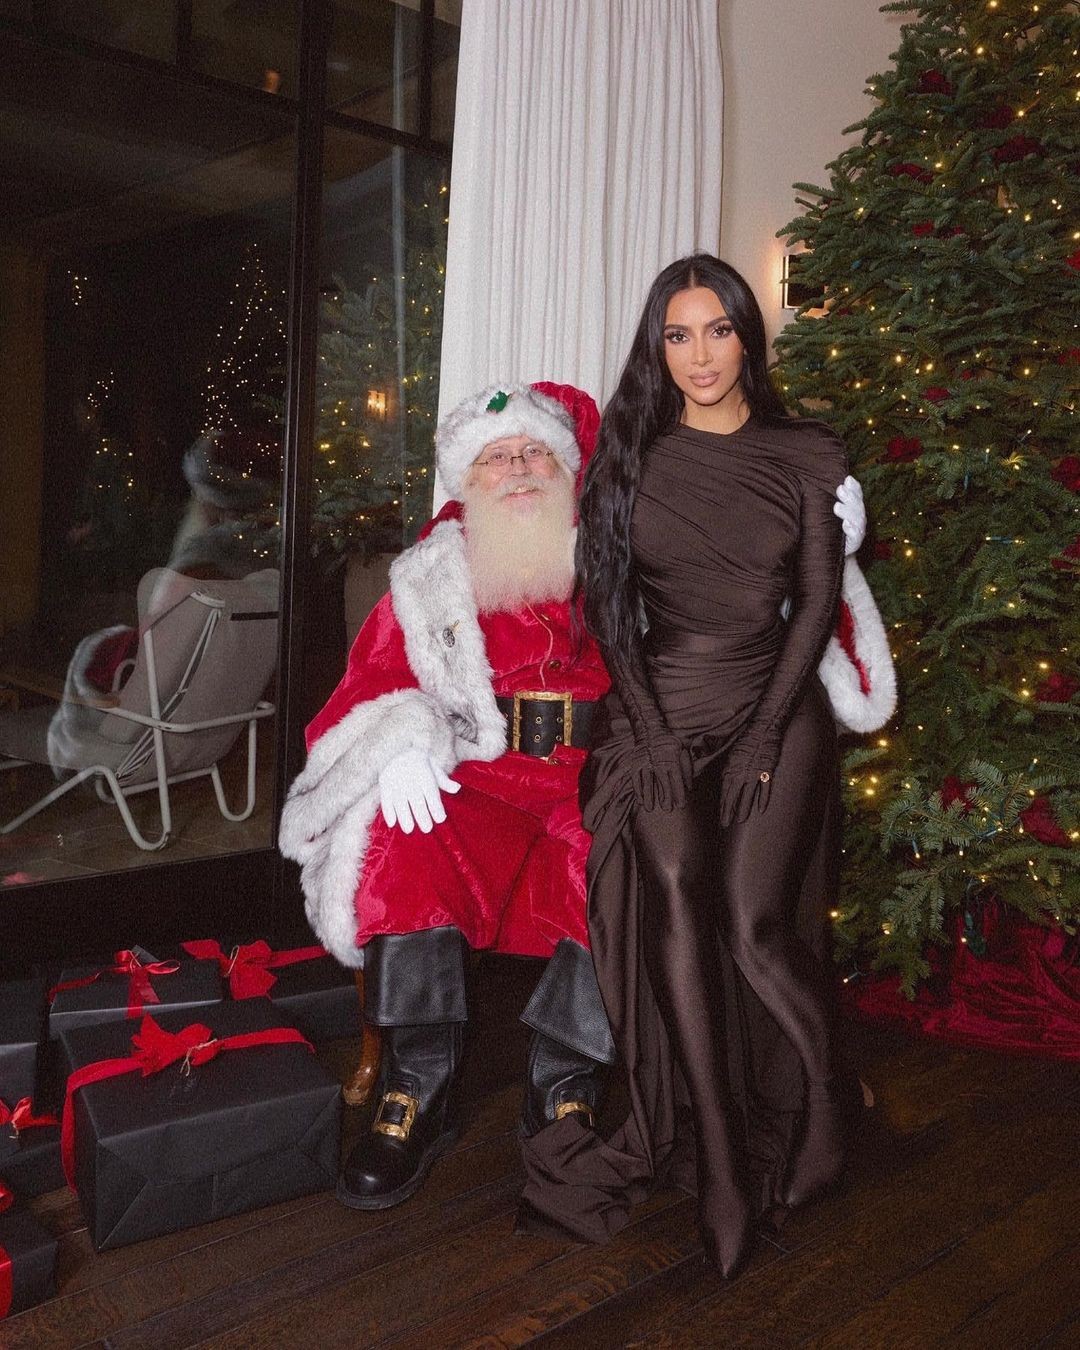 Kim posa com o Papai Noel (Foto: Reprodução Instagram)